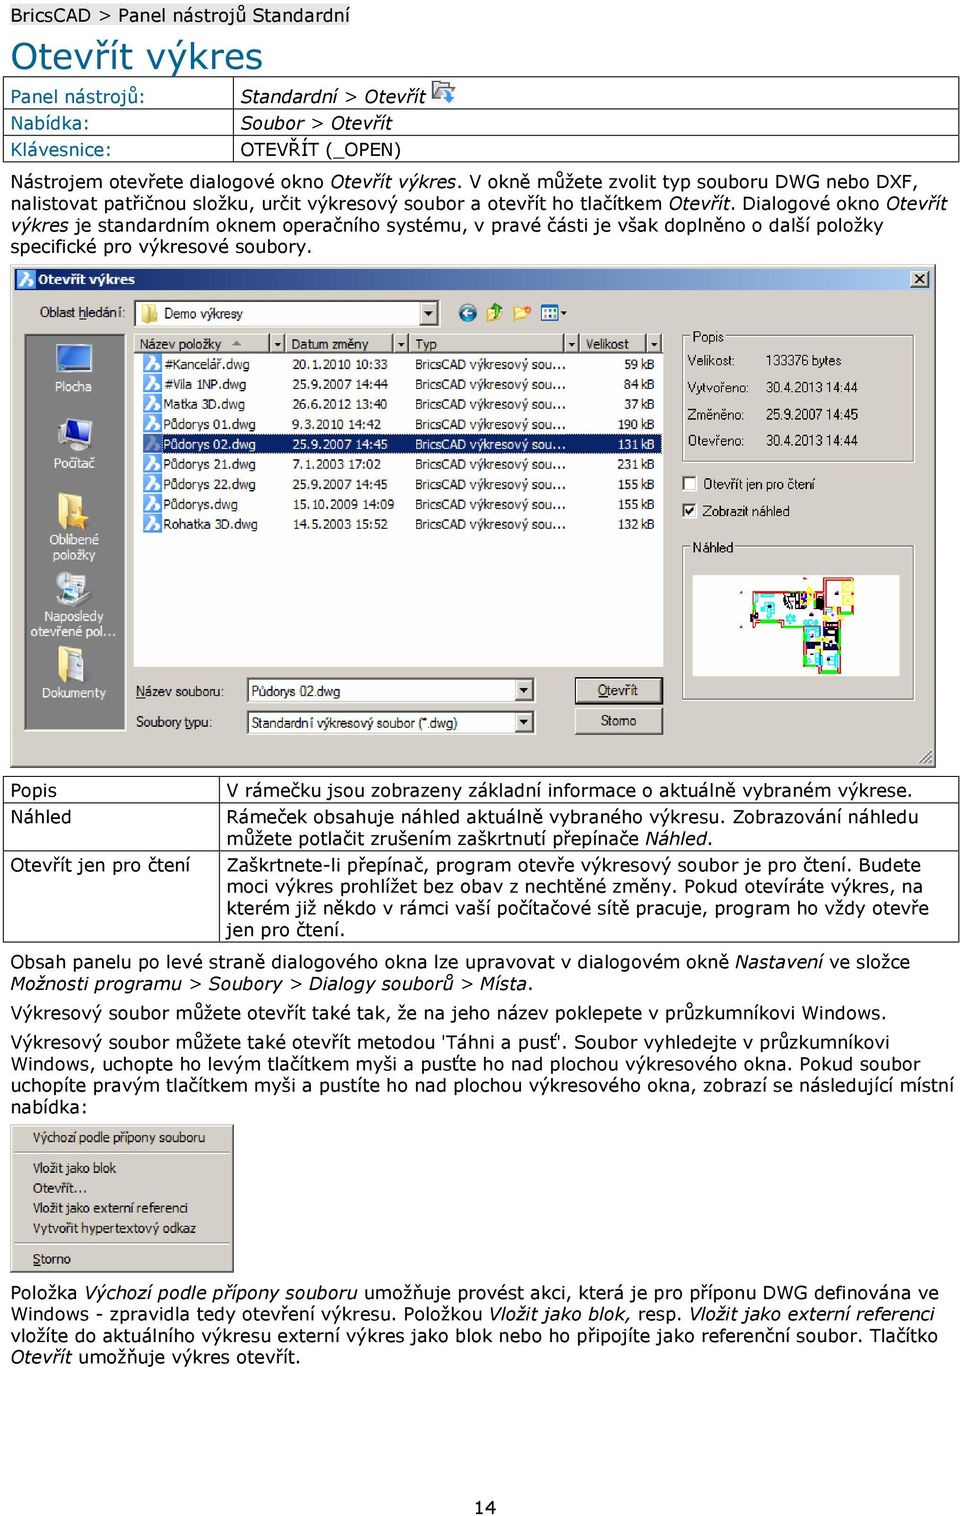 Dialogové okno Otevřít výkres je standardním oknem operačního systému, v pravé části je však doplněno o další položky specifické pro výkresové soubory.